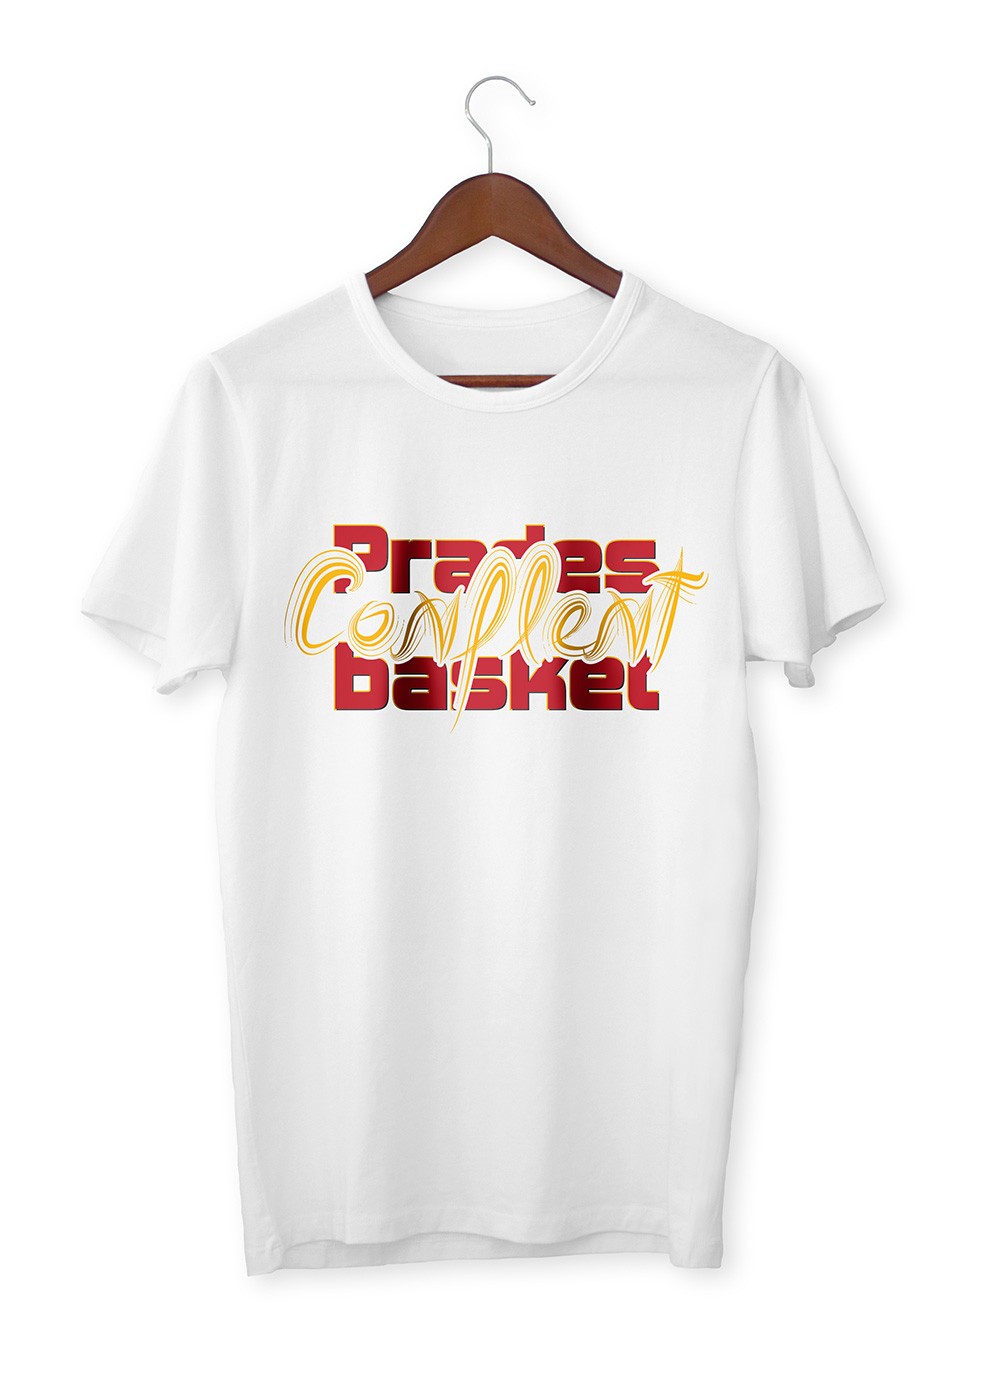 Tshirt homme Line Conflent Prades Conflent Basket